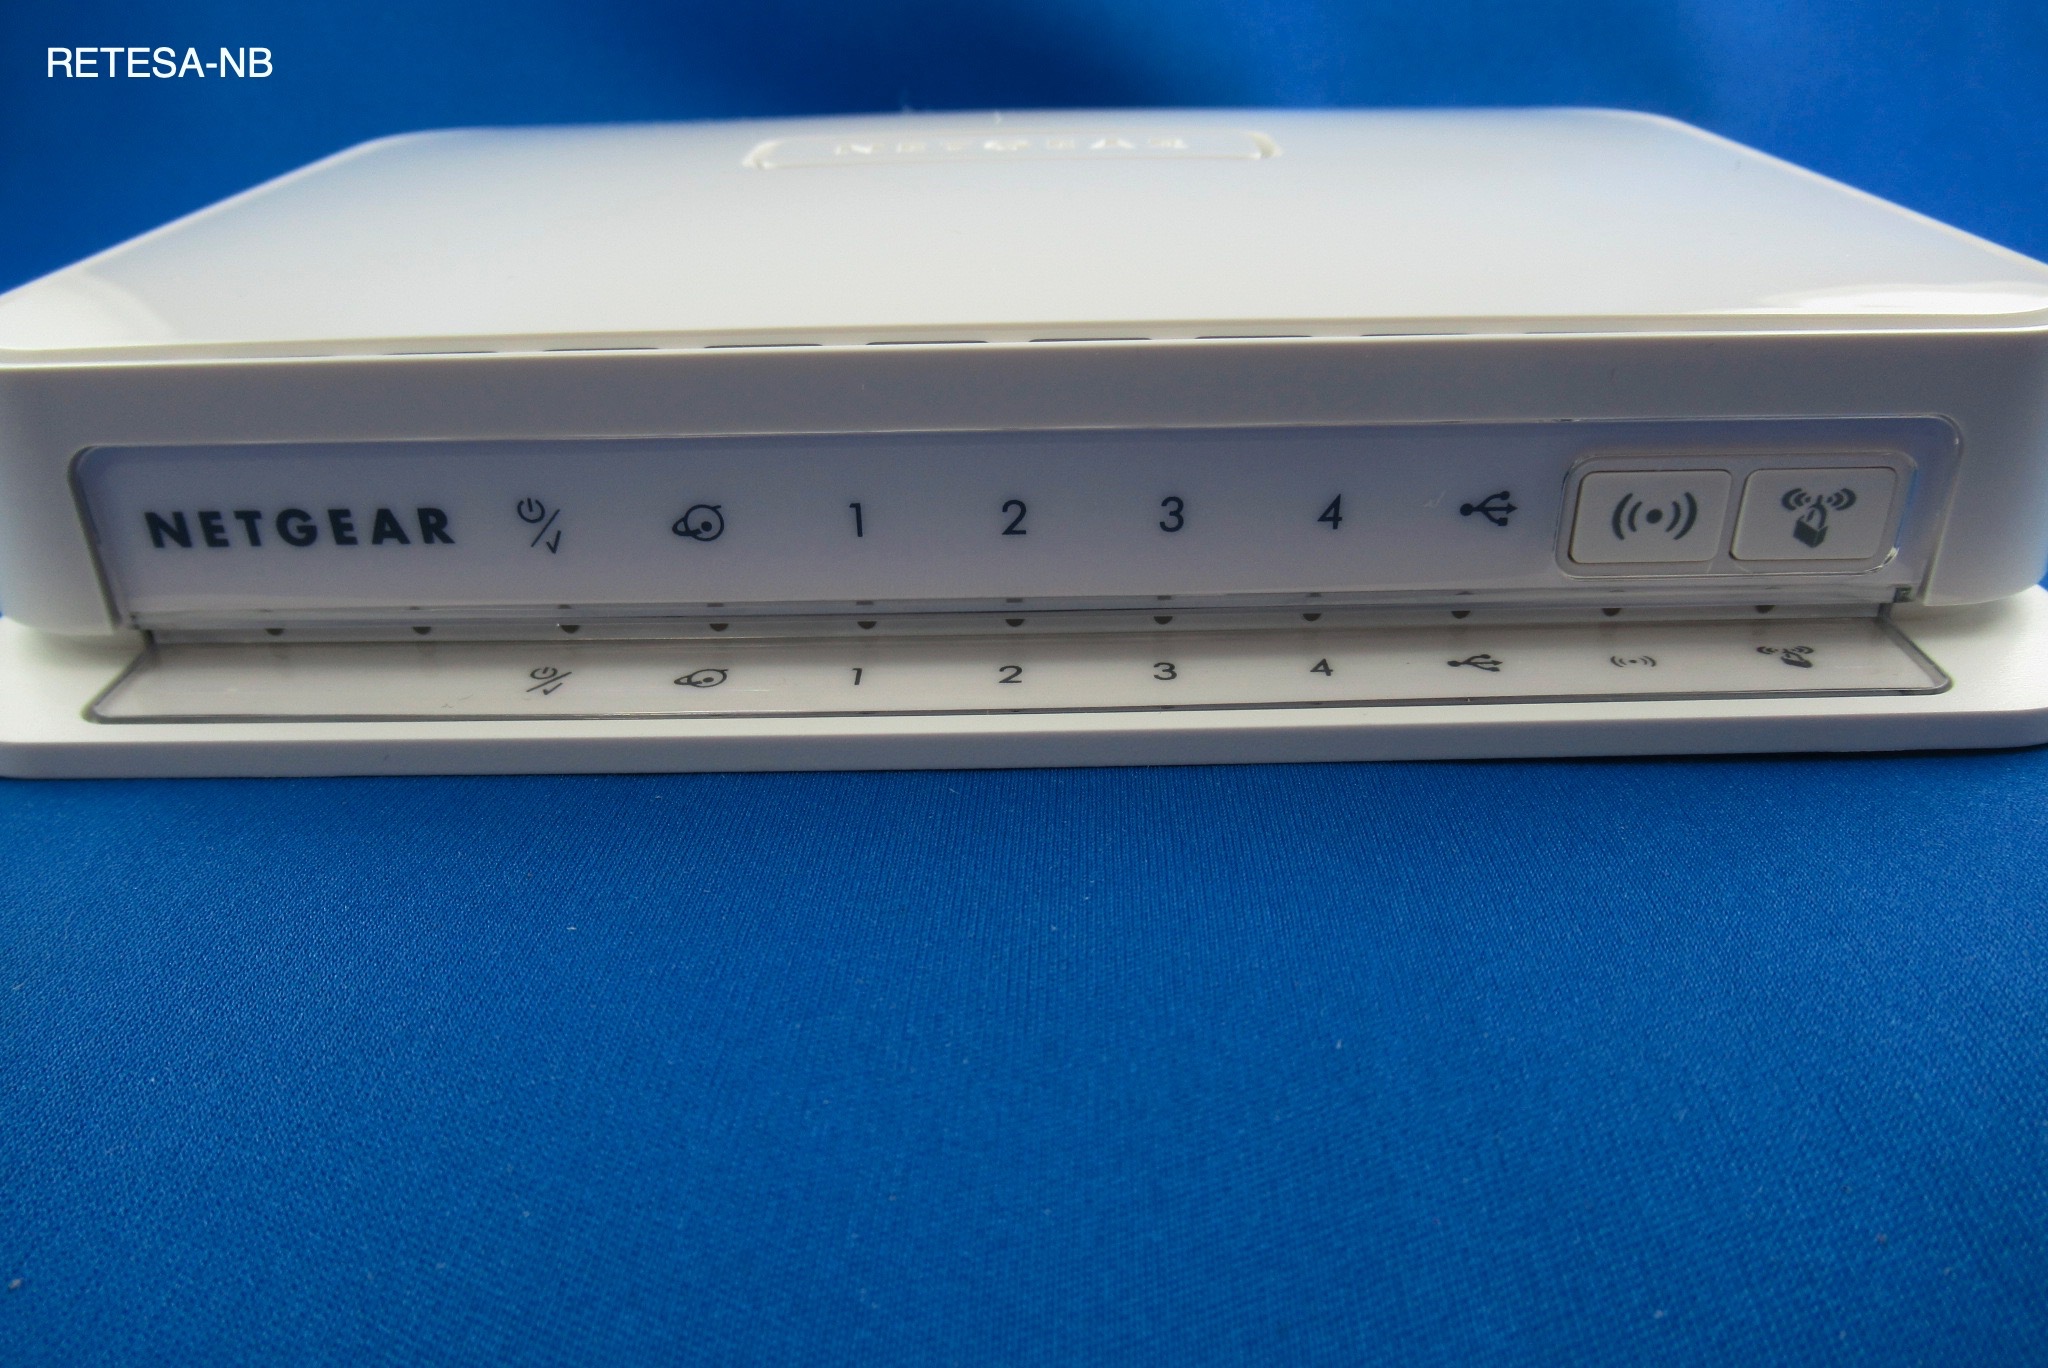 WLAN DSL-Router NETGEAR WNR2200 N300